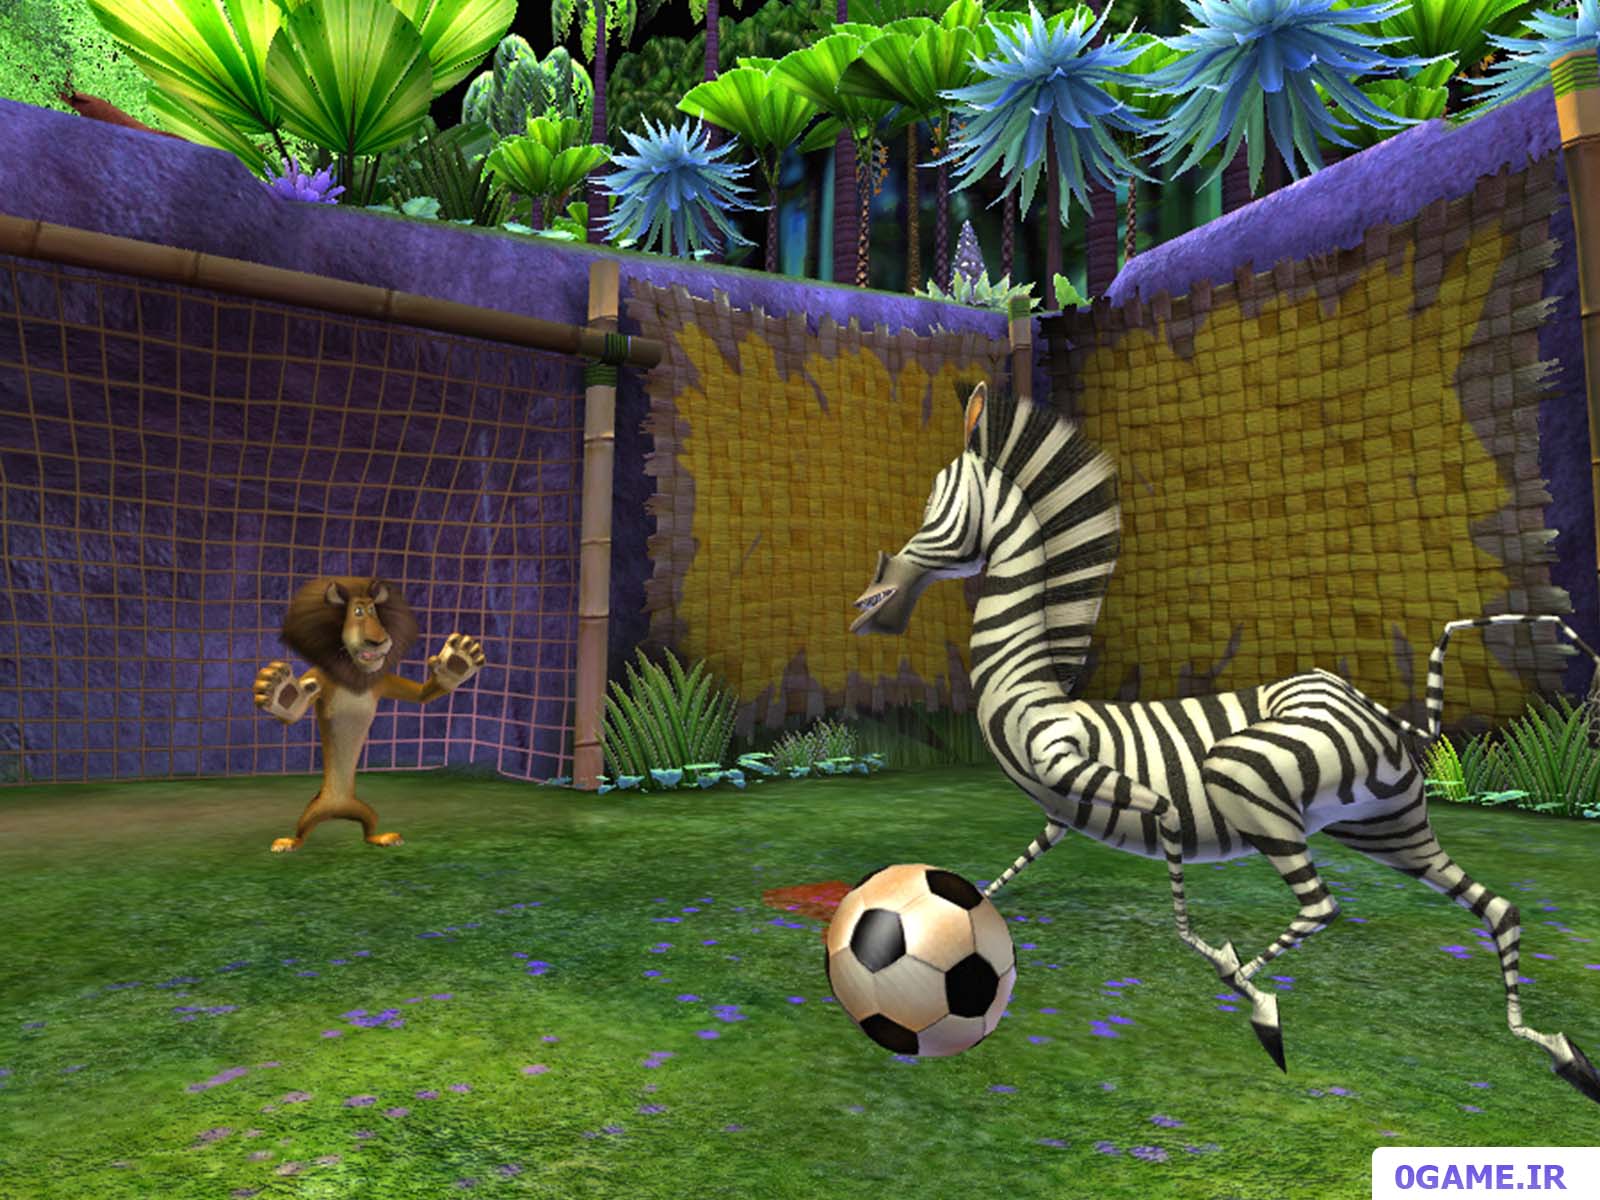 دانلود بازی ماداگاسکار 2 (Madagascar: Escape 2 Africa) نسخه کامل برای کامپیوتر